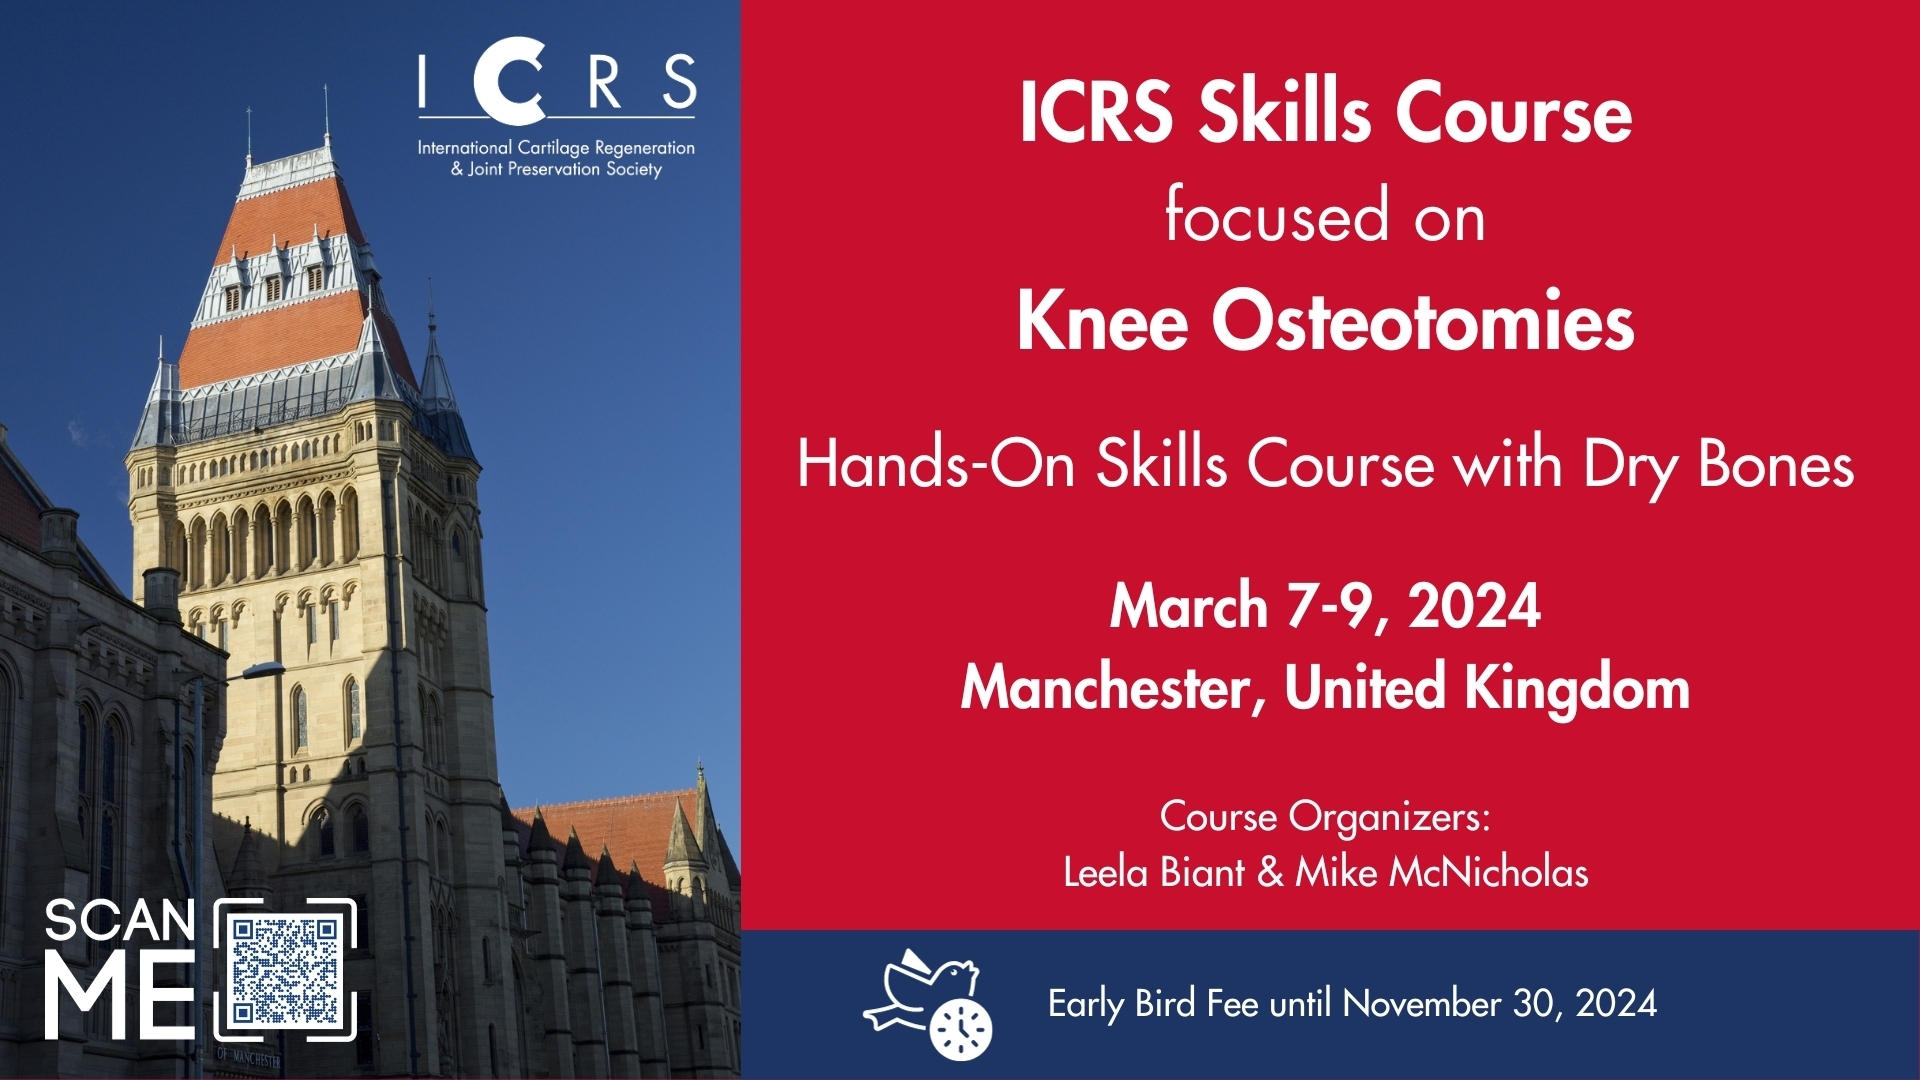 ICRS Skills Course focused on Knee Osteotomies